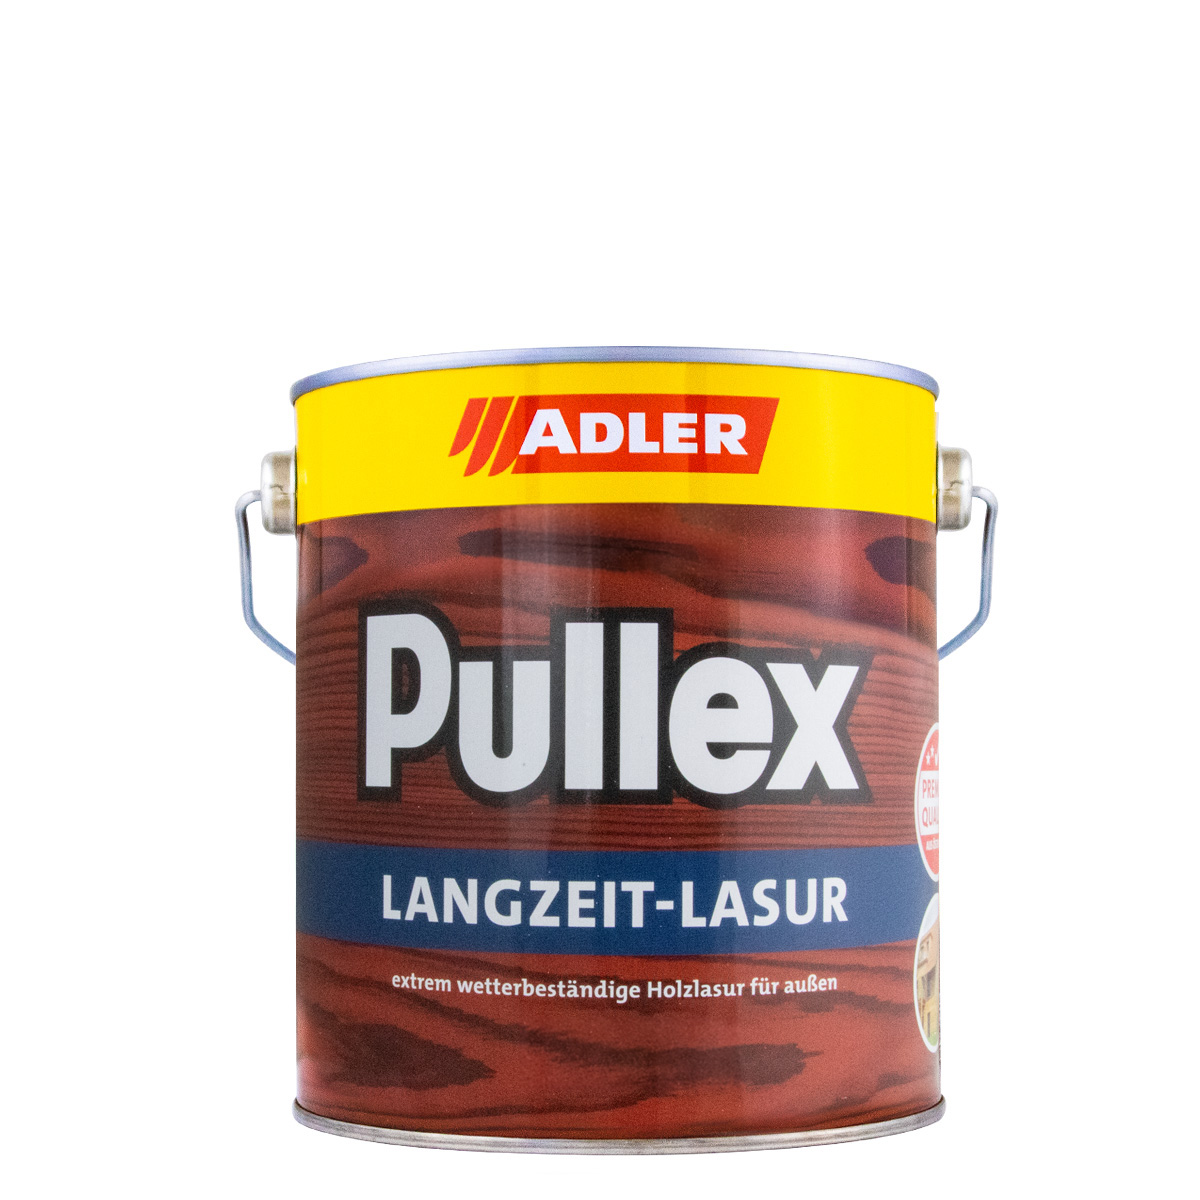 adler_pullex_langzeitlasur_2,5L_gross